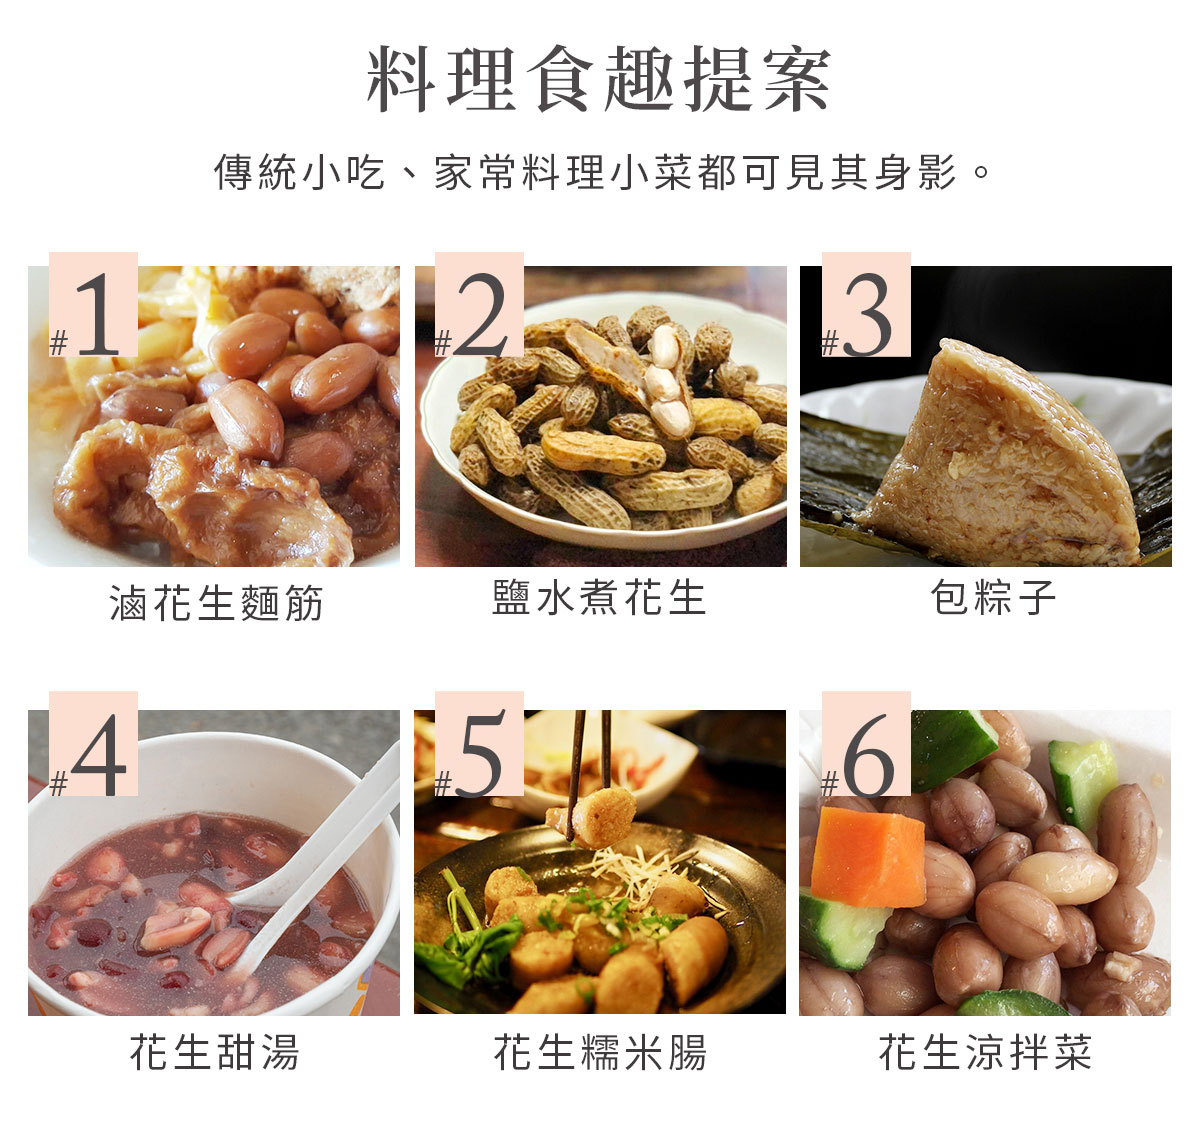 傳統小吃、家常料理小菜都可見大冇花生的身影，如：包粽子、花生糯米腸、涼拌菜、花生滷麵筋、燉花生湯。